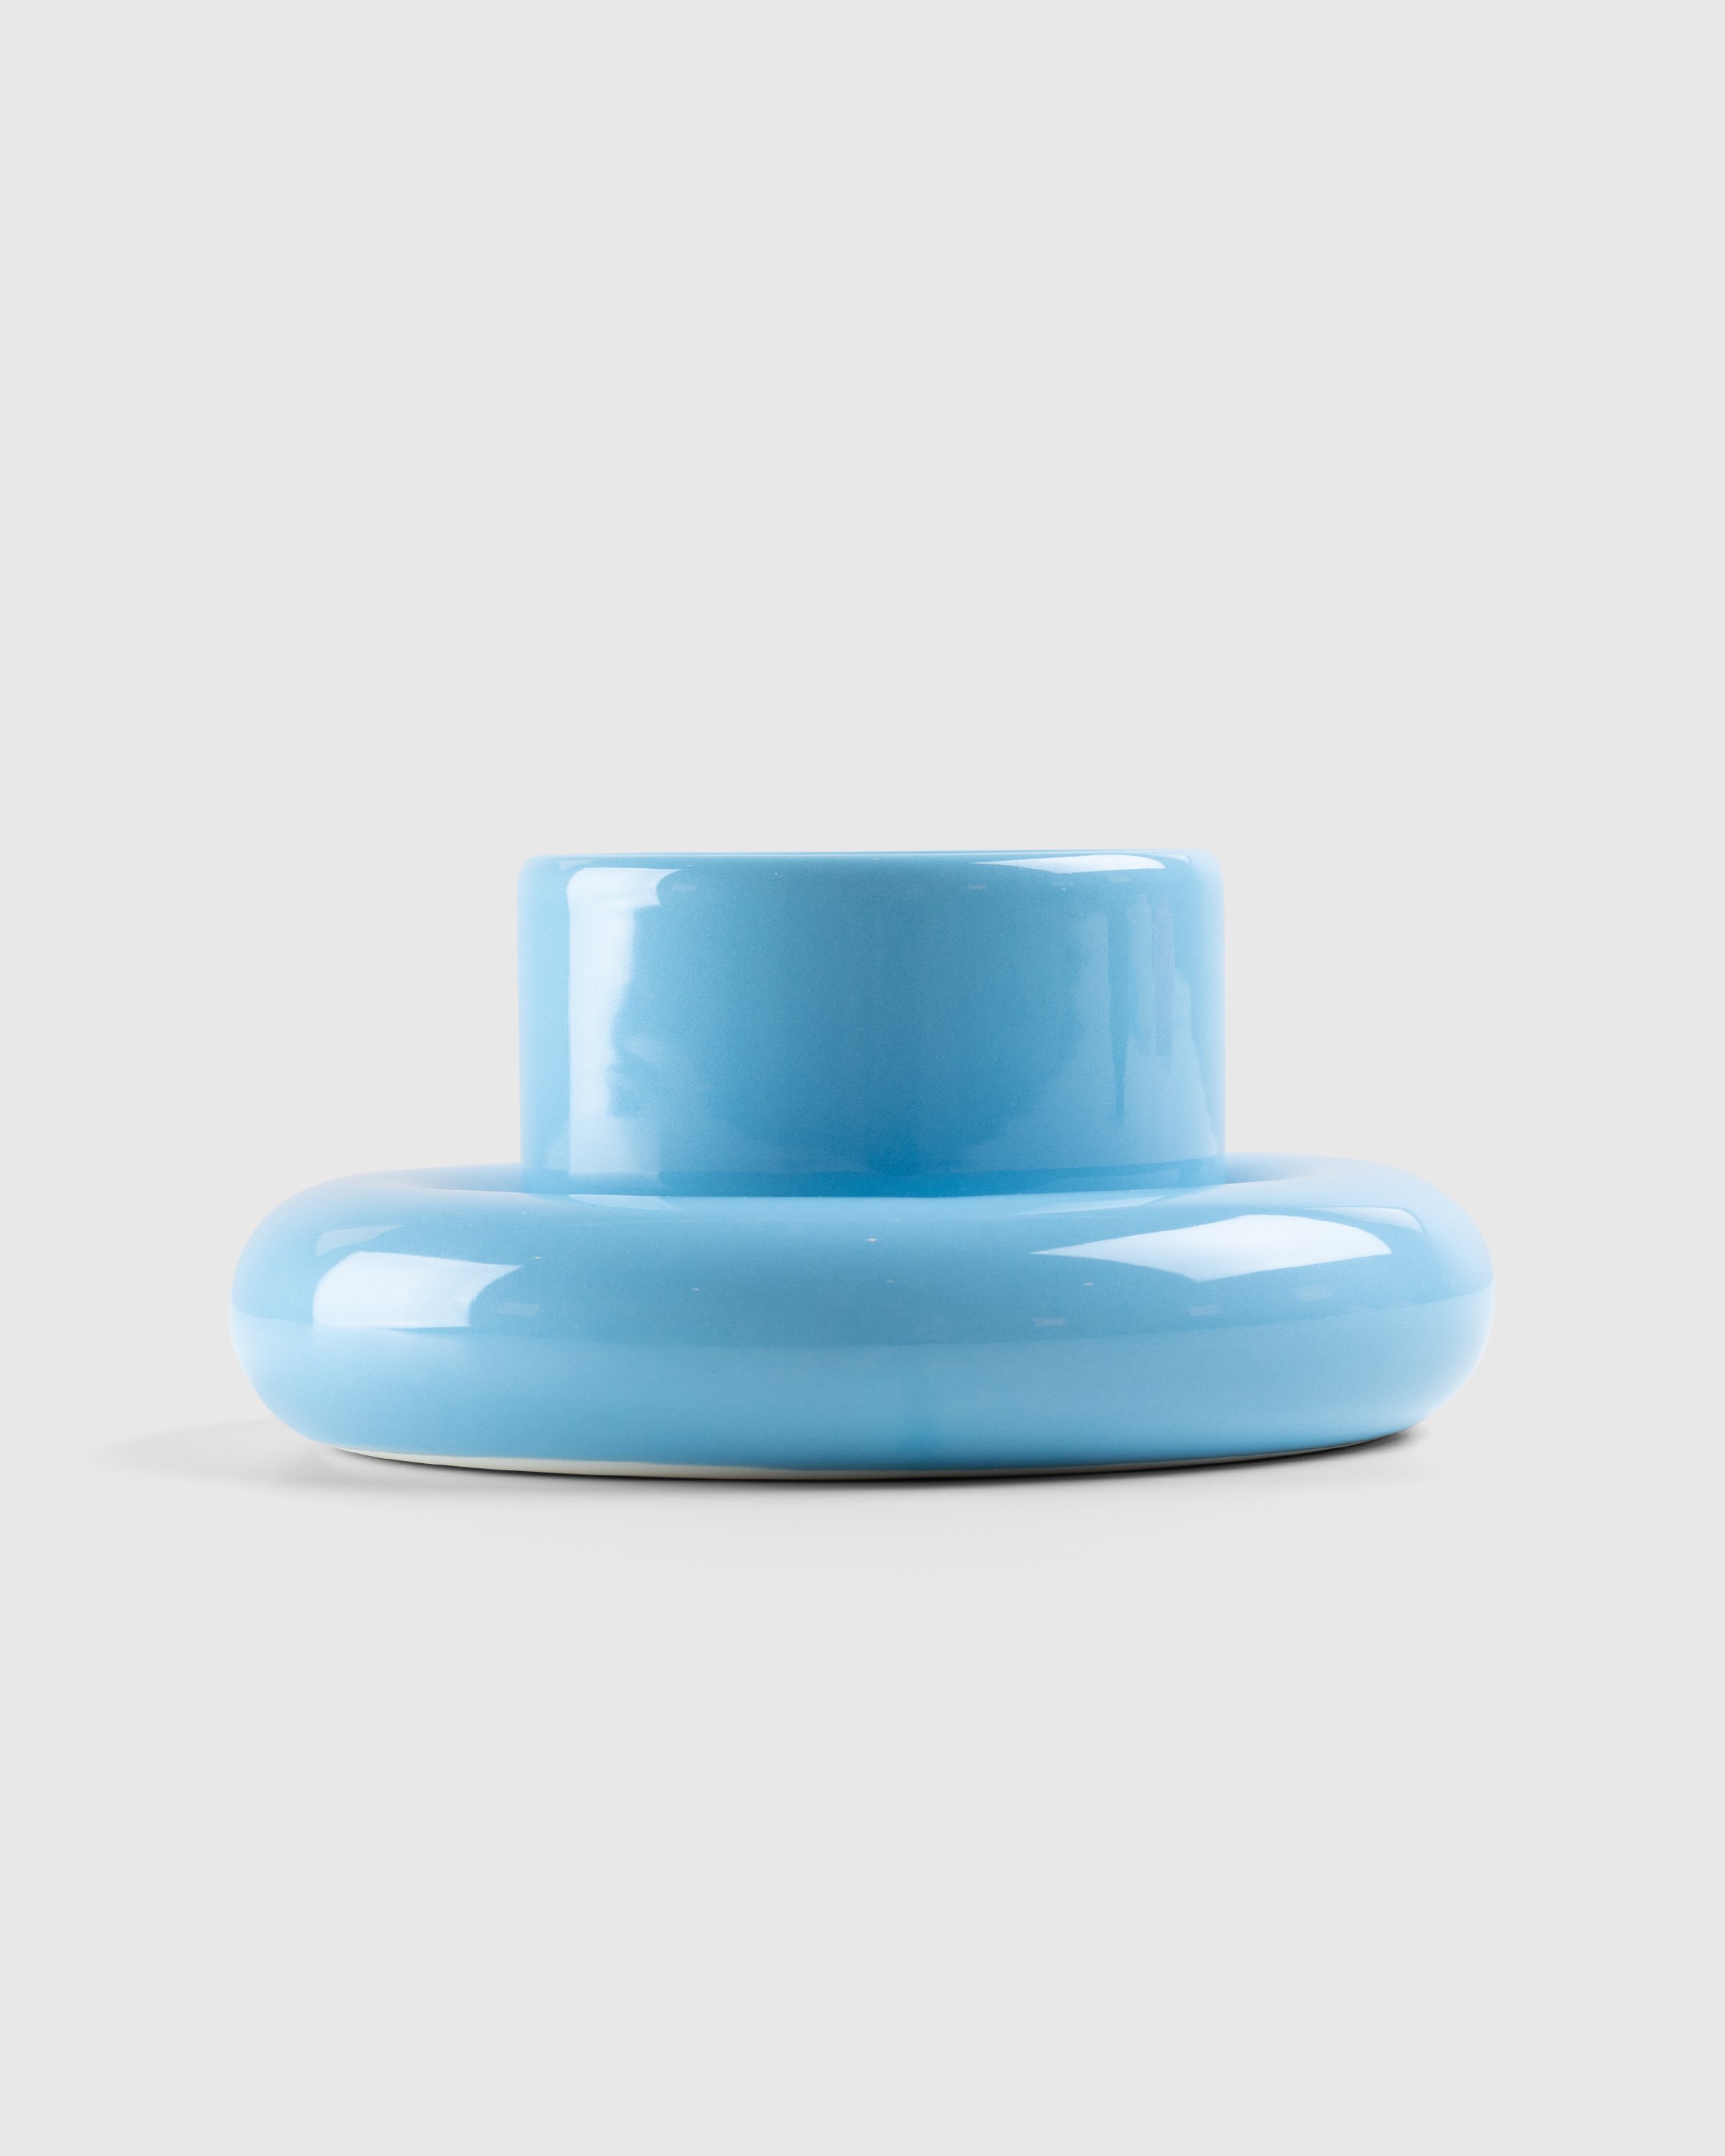 Gustaf Westman – Chunky Cup Standard Blue | Highsnobiety Shop